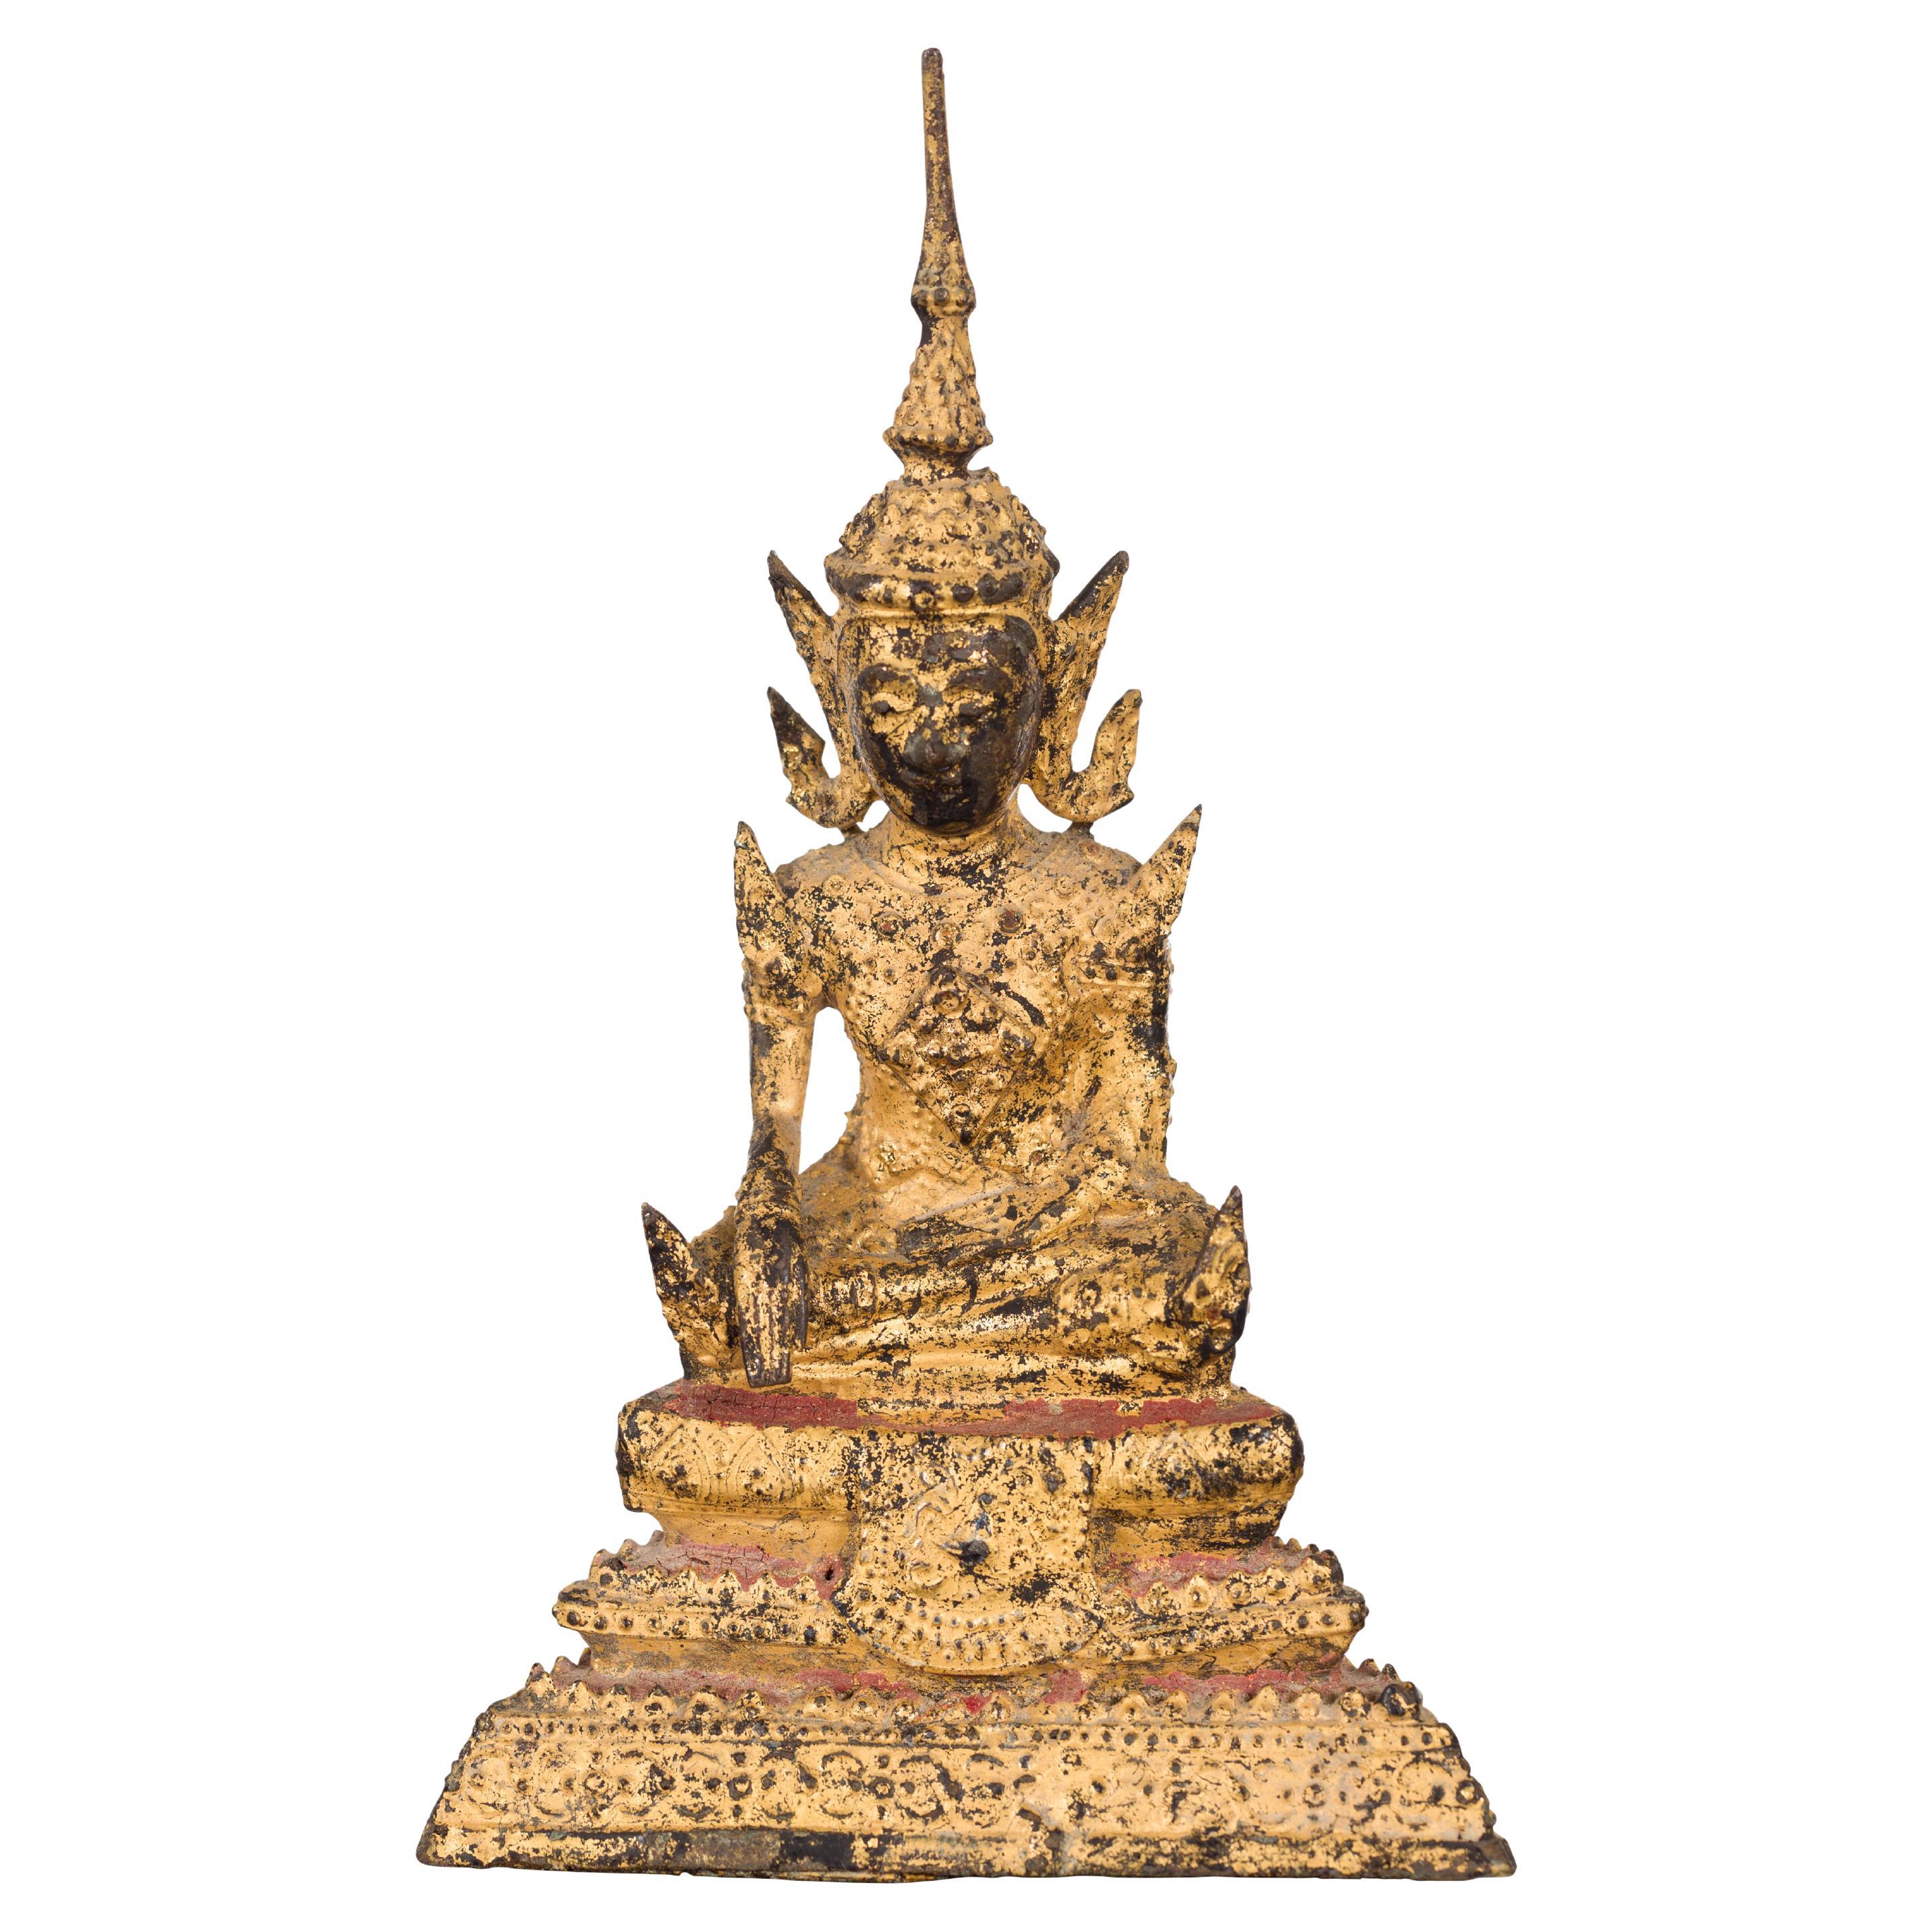 Petite Thai Rattanakosin Period Bronze Buddha Sculpture in Bhumisparsha Mudra